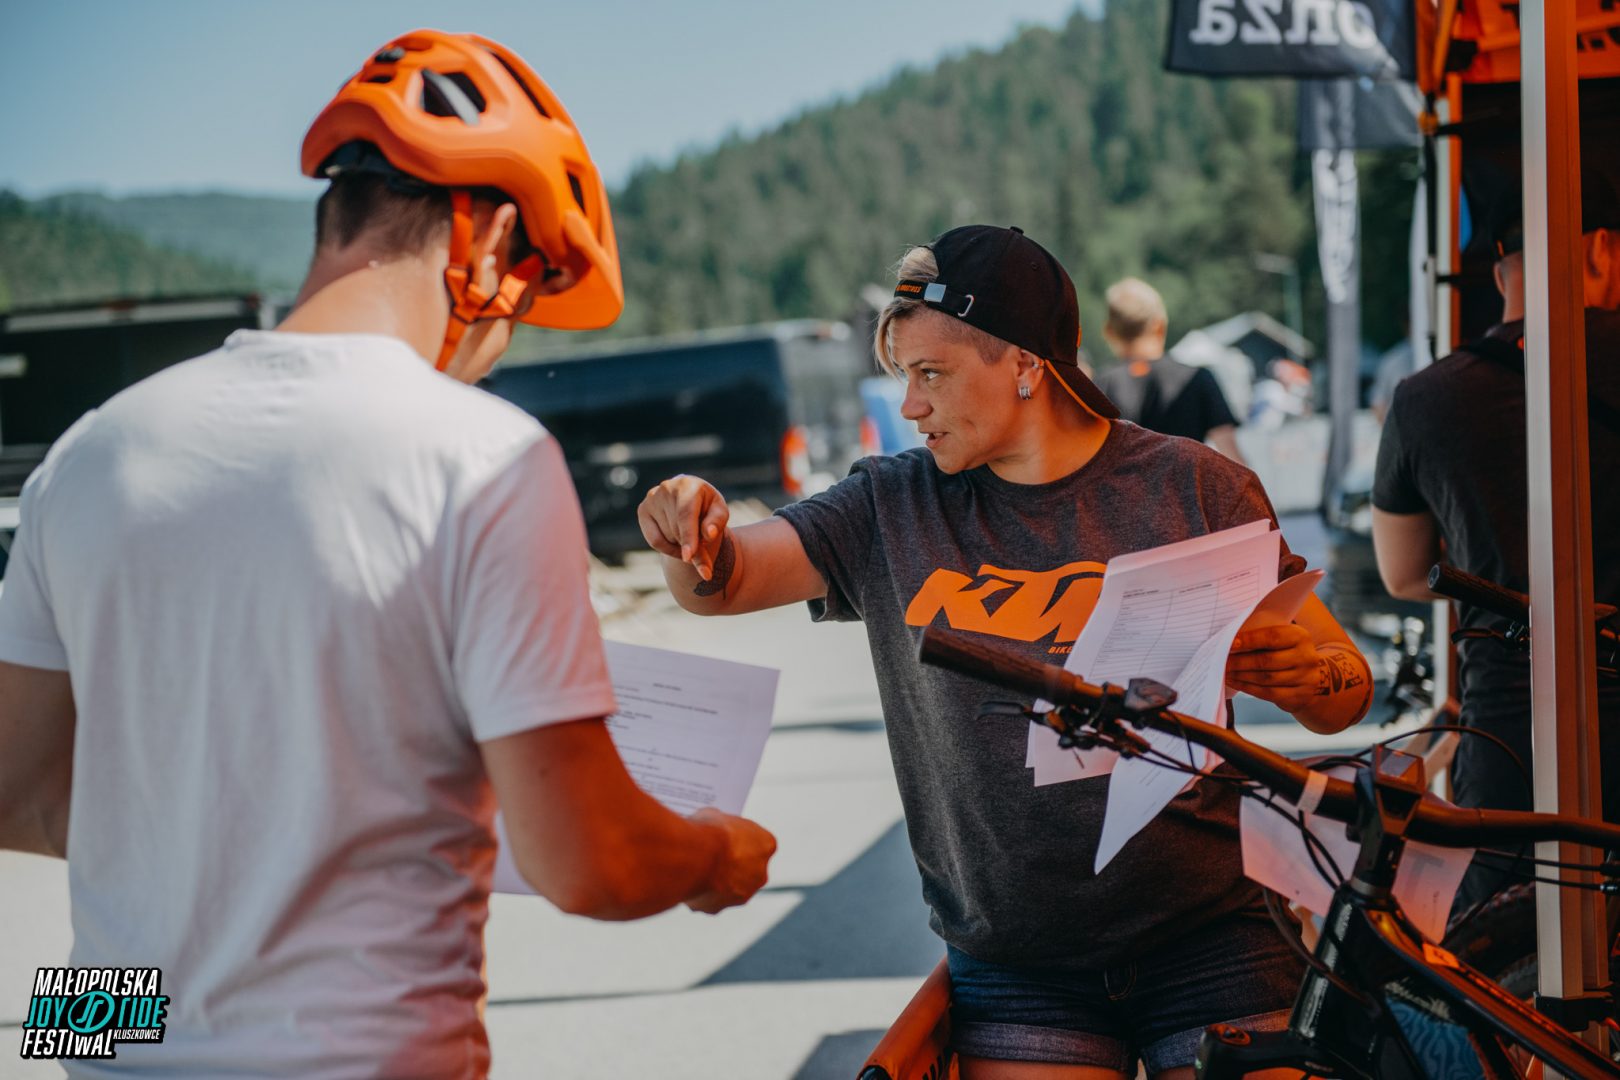 Darmowe konkursy i atrakcje na Małopolska Joy Ride Fesitwal 2022: KTM E-Bike Uphill, Szkolenia, Wycieczki